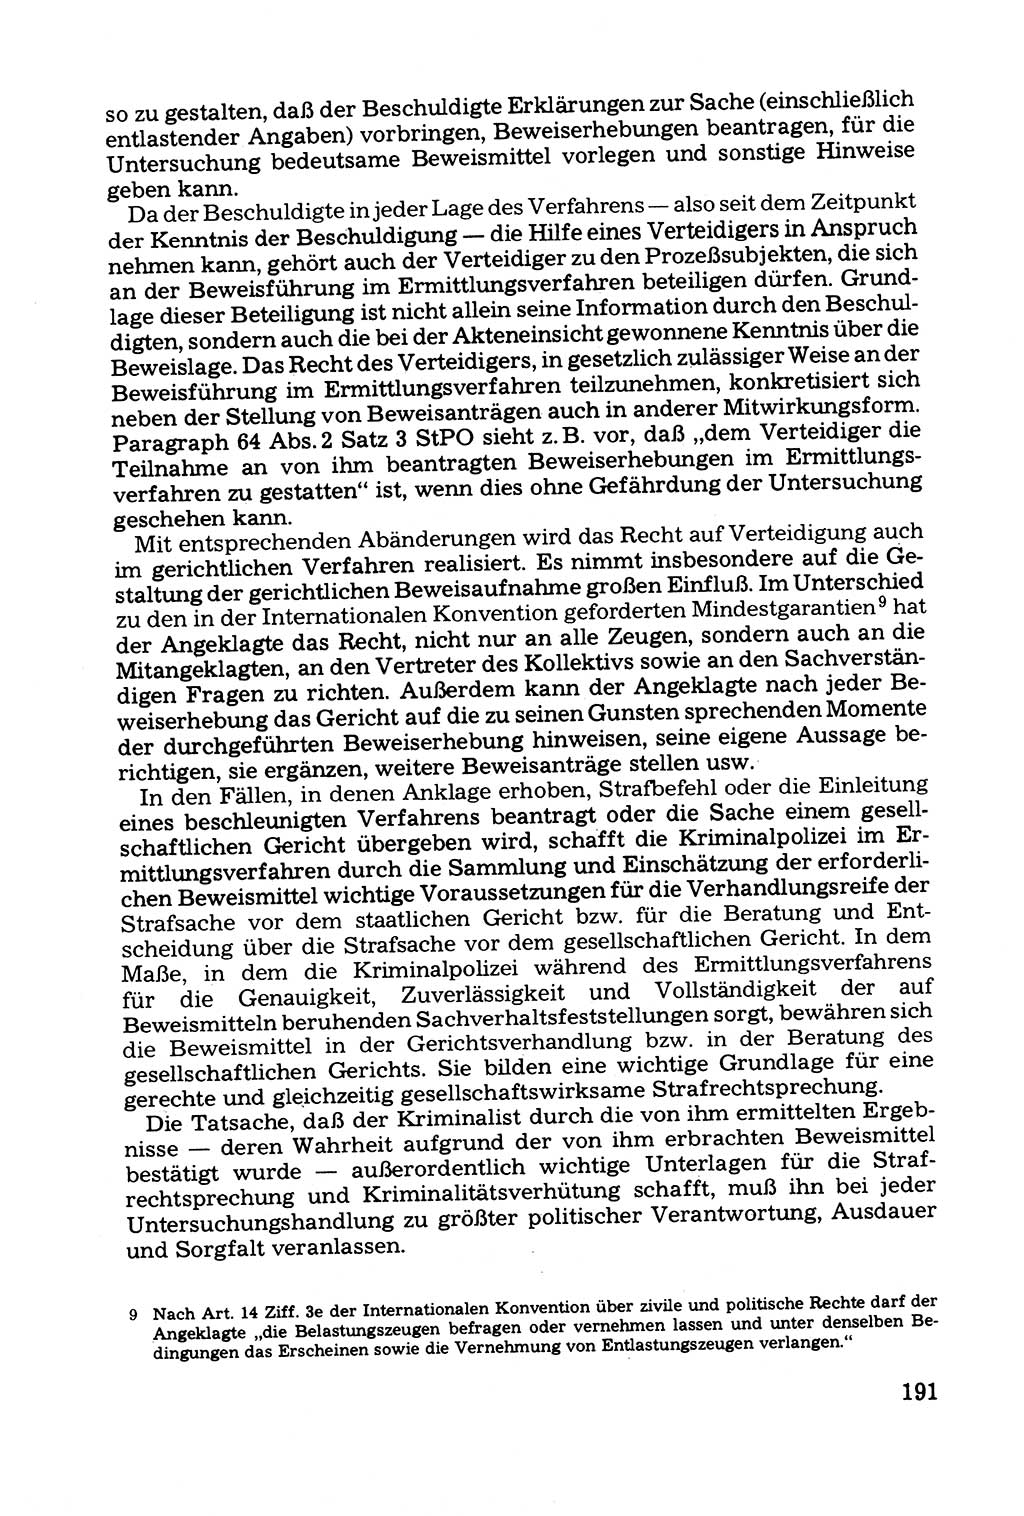 Grundfragen der Beweisführung im Ermittlungsverfahren [Deutsche Demokratische Republik (DDR)] 1980, Seite 191 (Bws.-Fhrg. EV DDR 1980, S. 191)